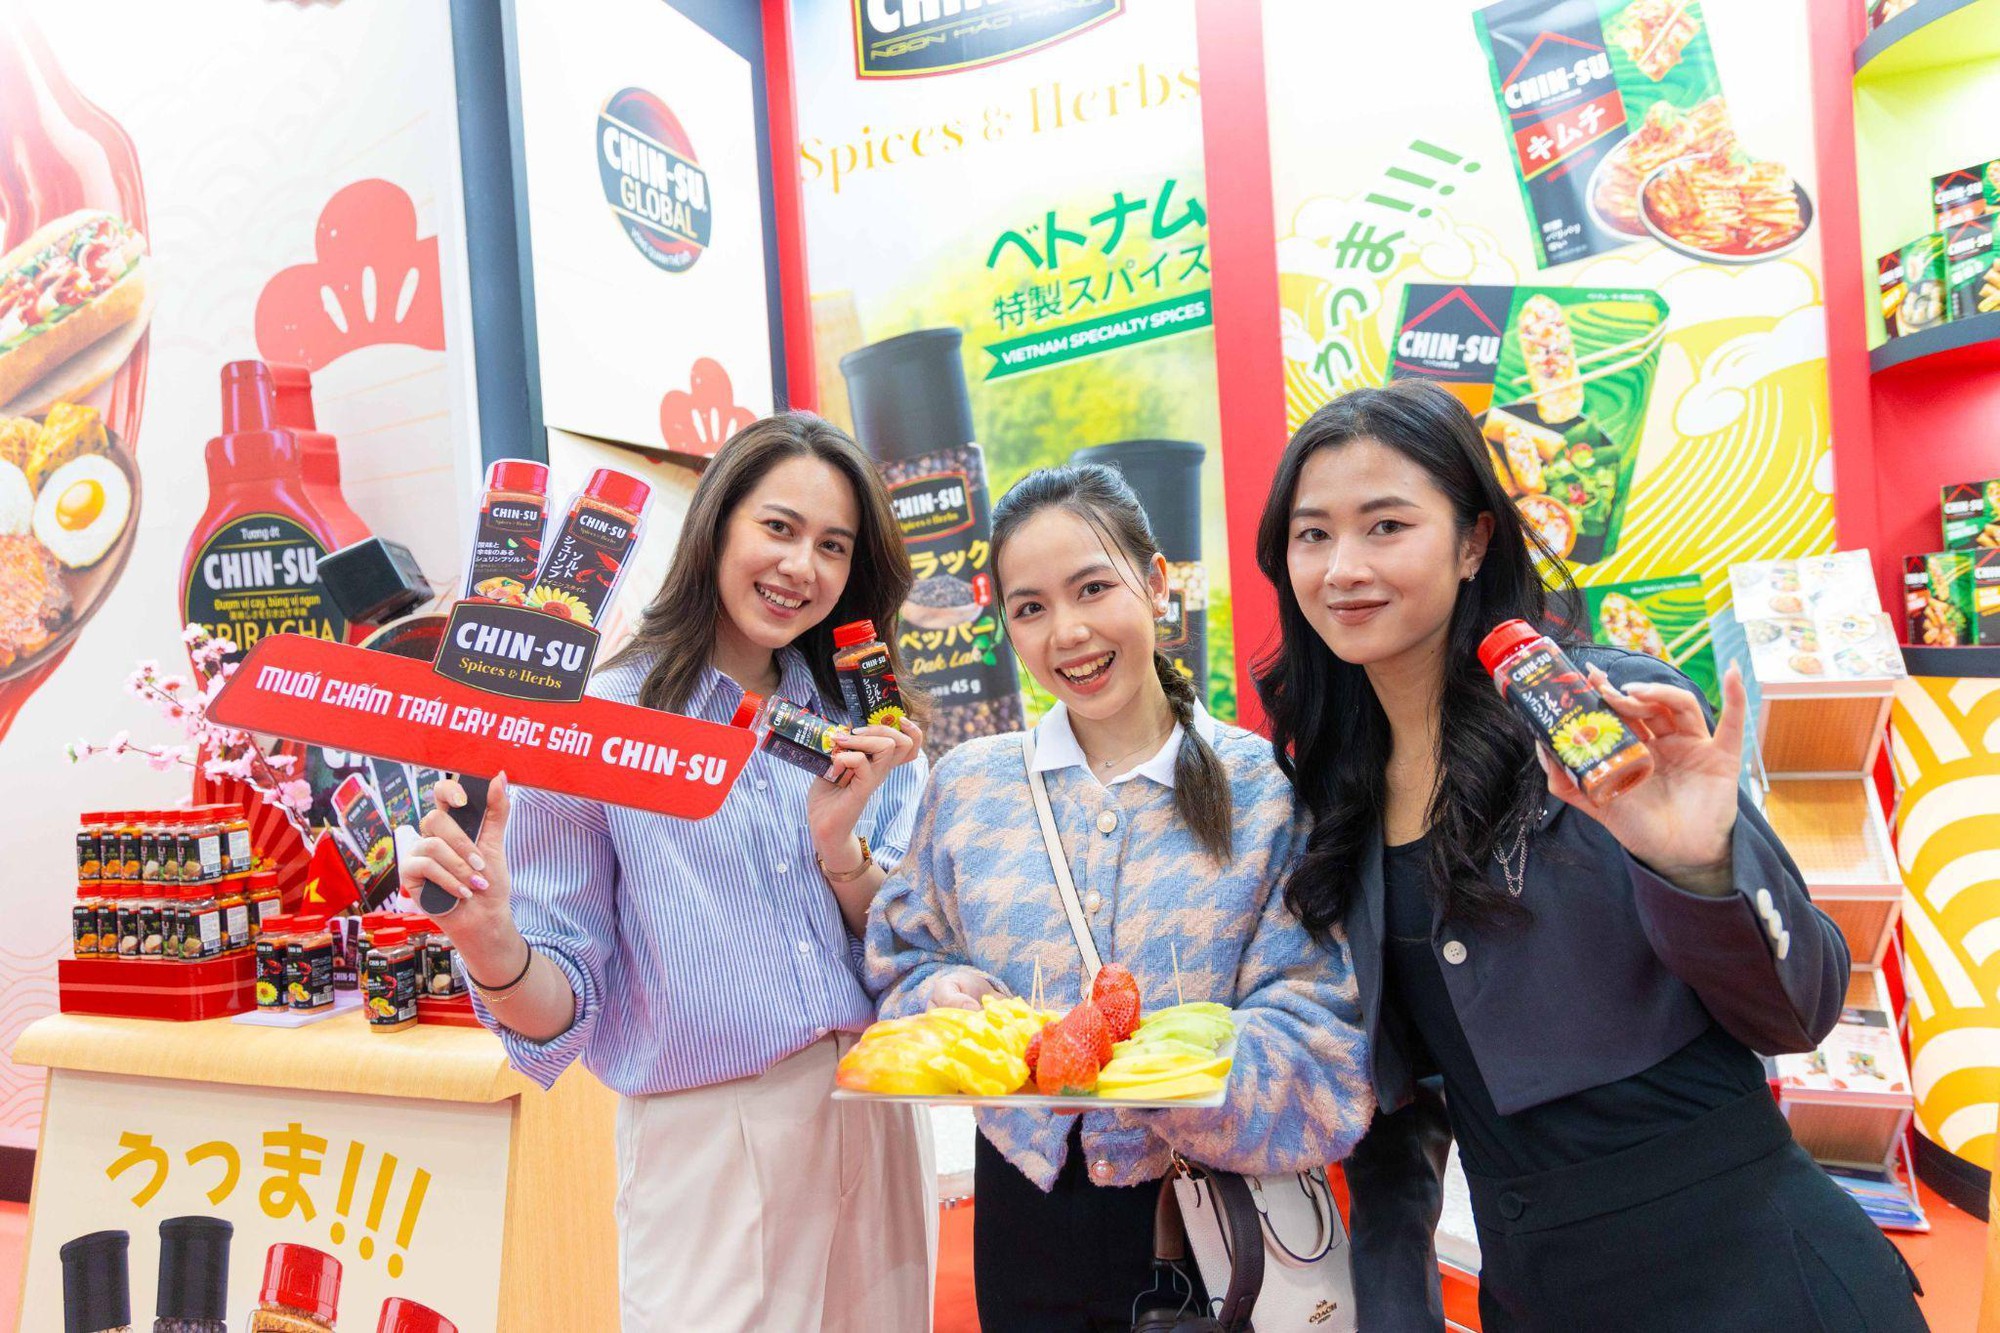 Giới trẻ Nhật hào hứng trải nghiệm lọ muối chấm tôm chua cay Chin-su - Ảnh 3.